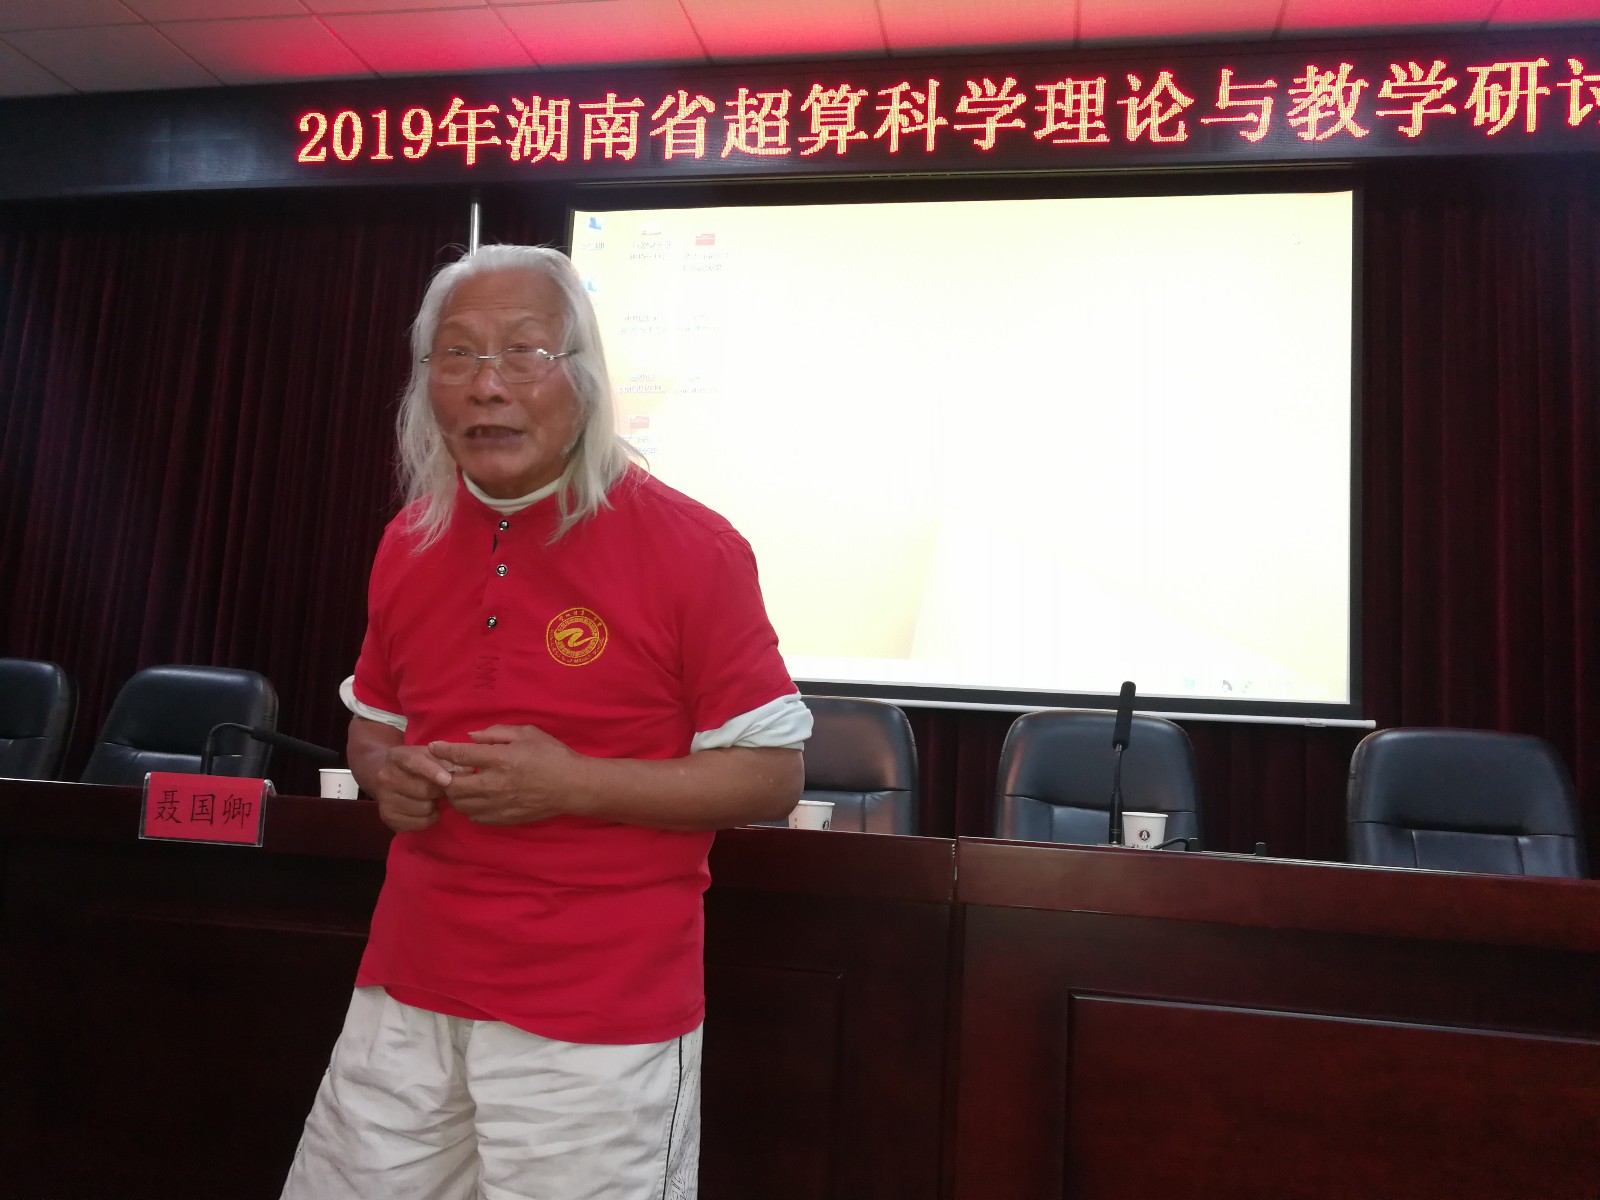 出生于长沙望城、今年76岁的超级计算科学家、美国电磁科学院院士谢干权在会上发布自己的创新成果。长沙晚报全媒体记者 黎铁桥摄